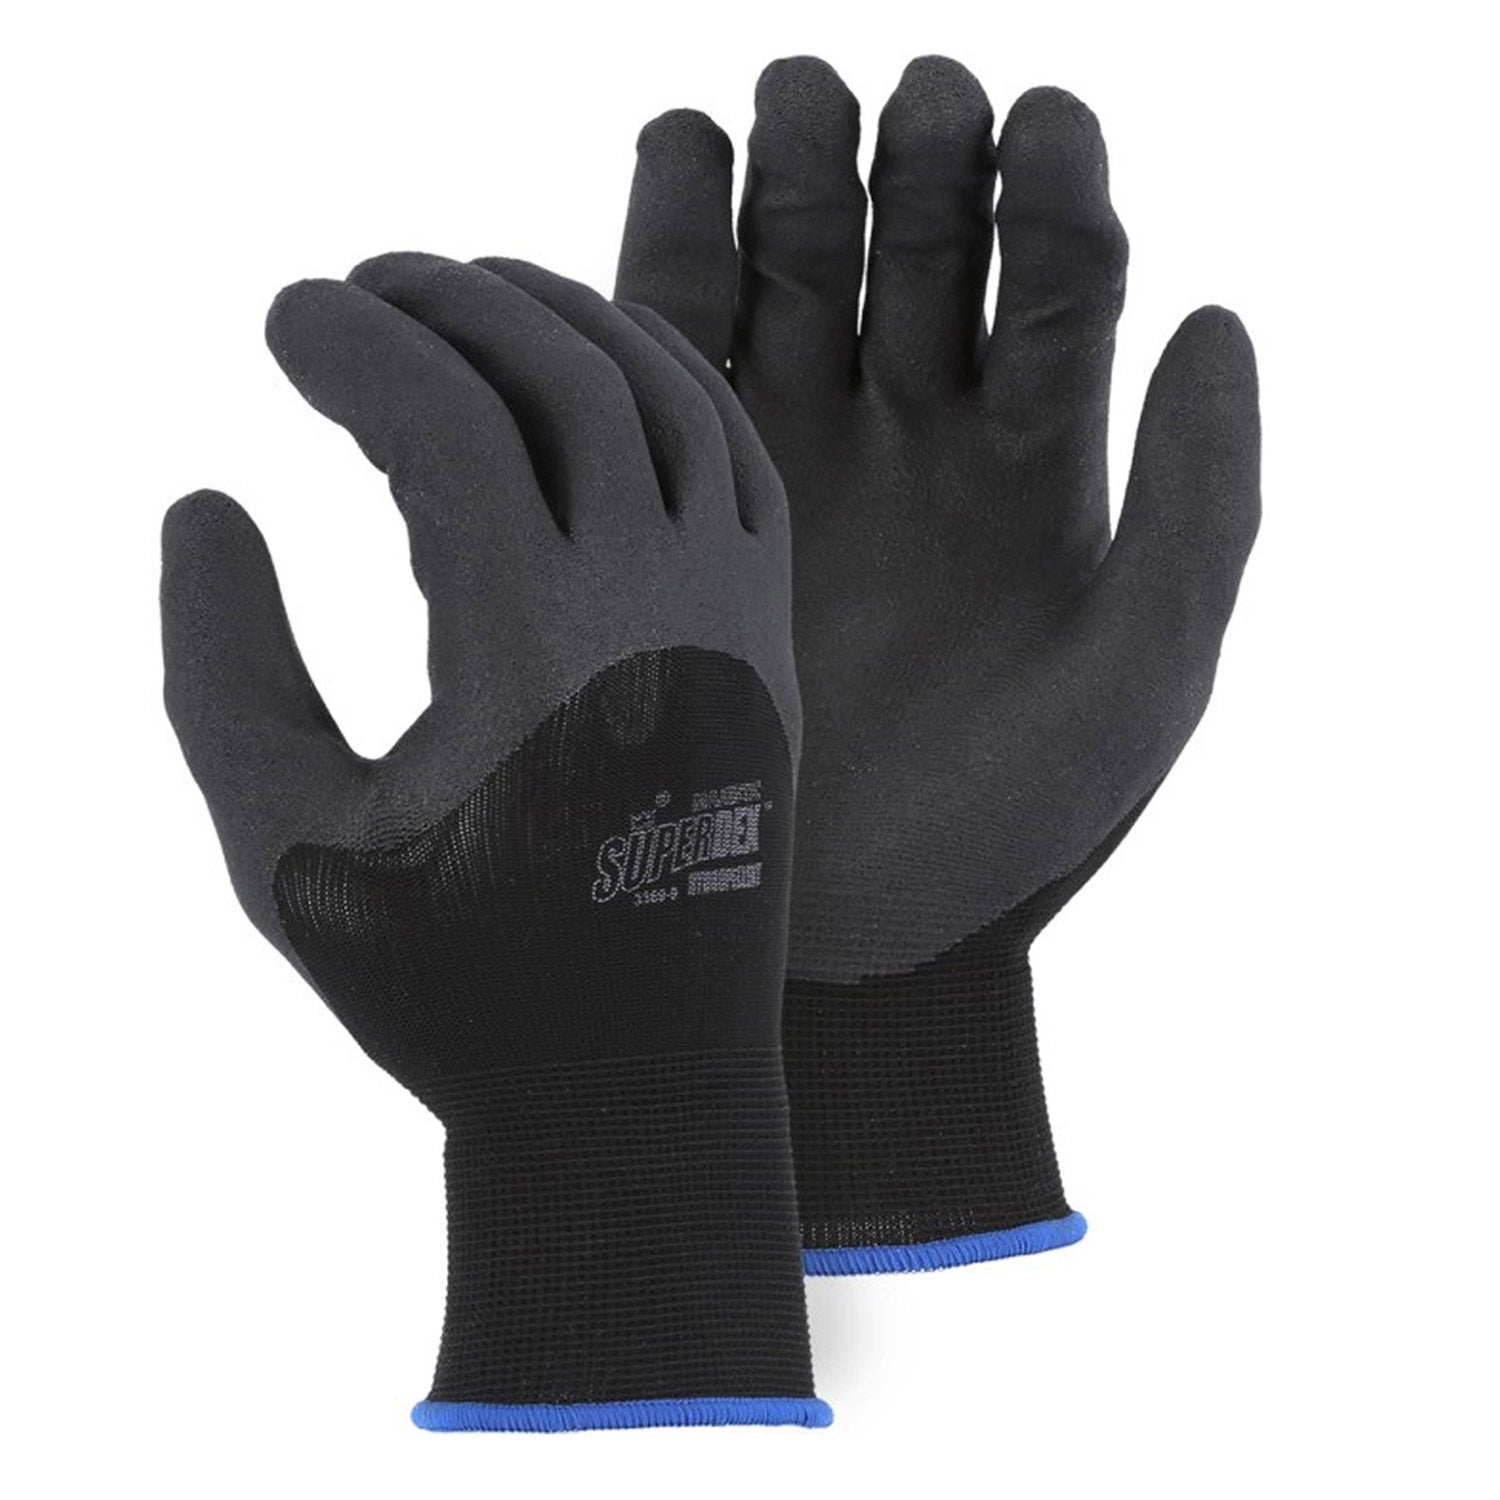 Majestic Lightweight SuperDex Dipped Glove - Work World - Workwear, Work Boots, Safety Gear